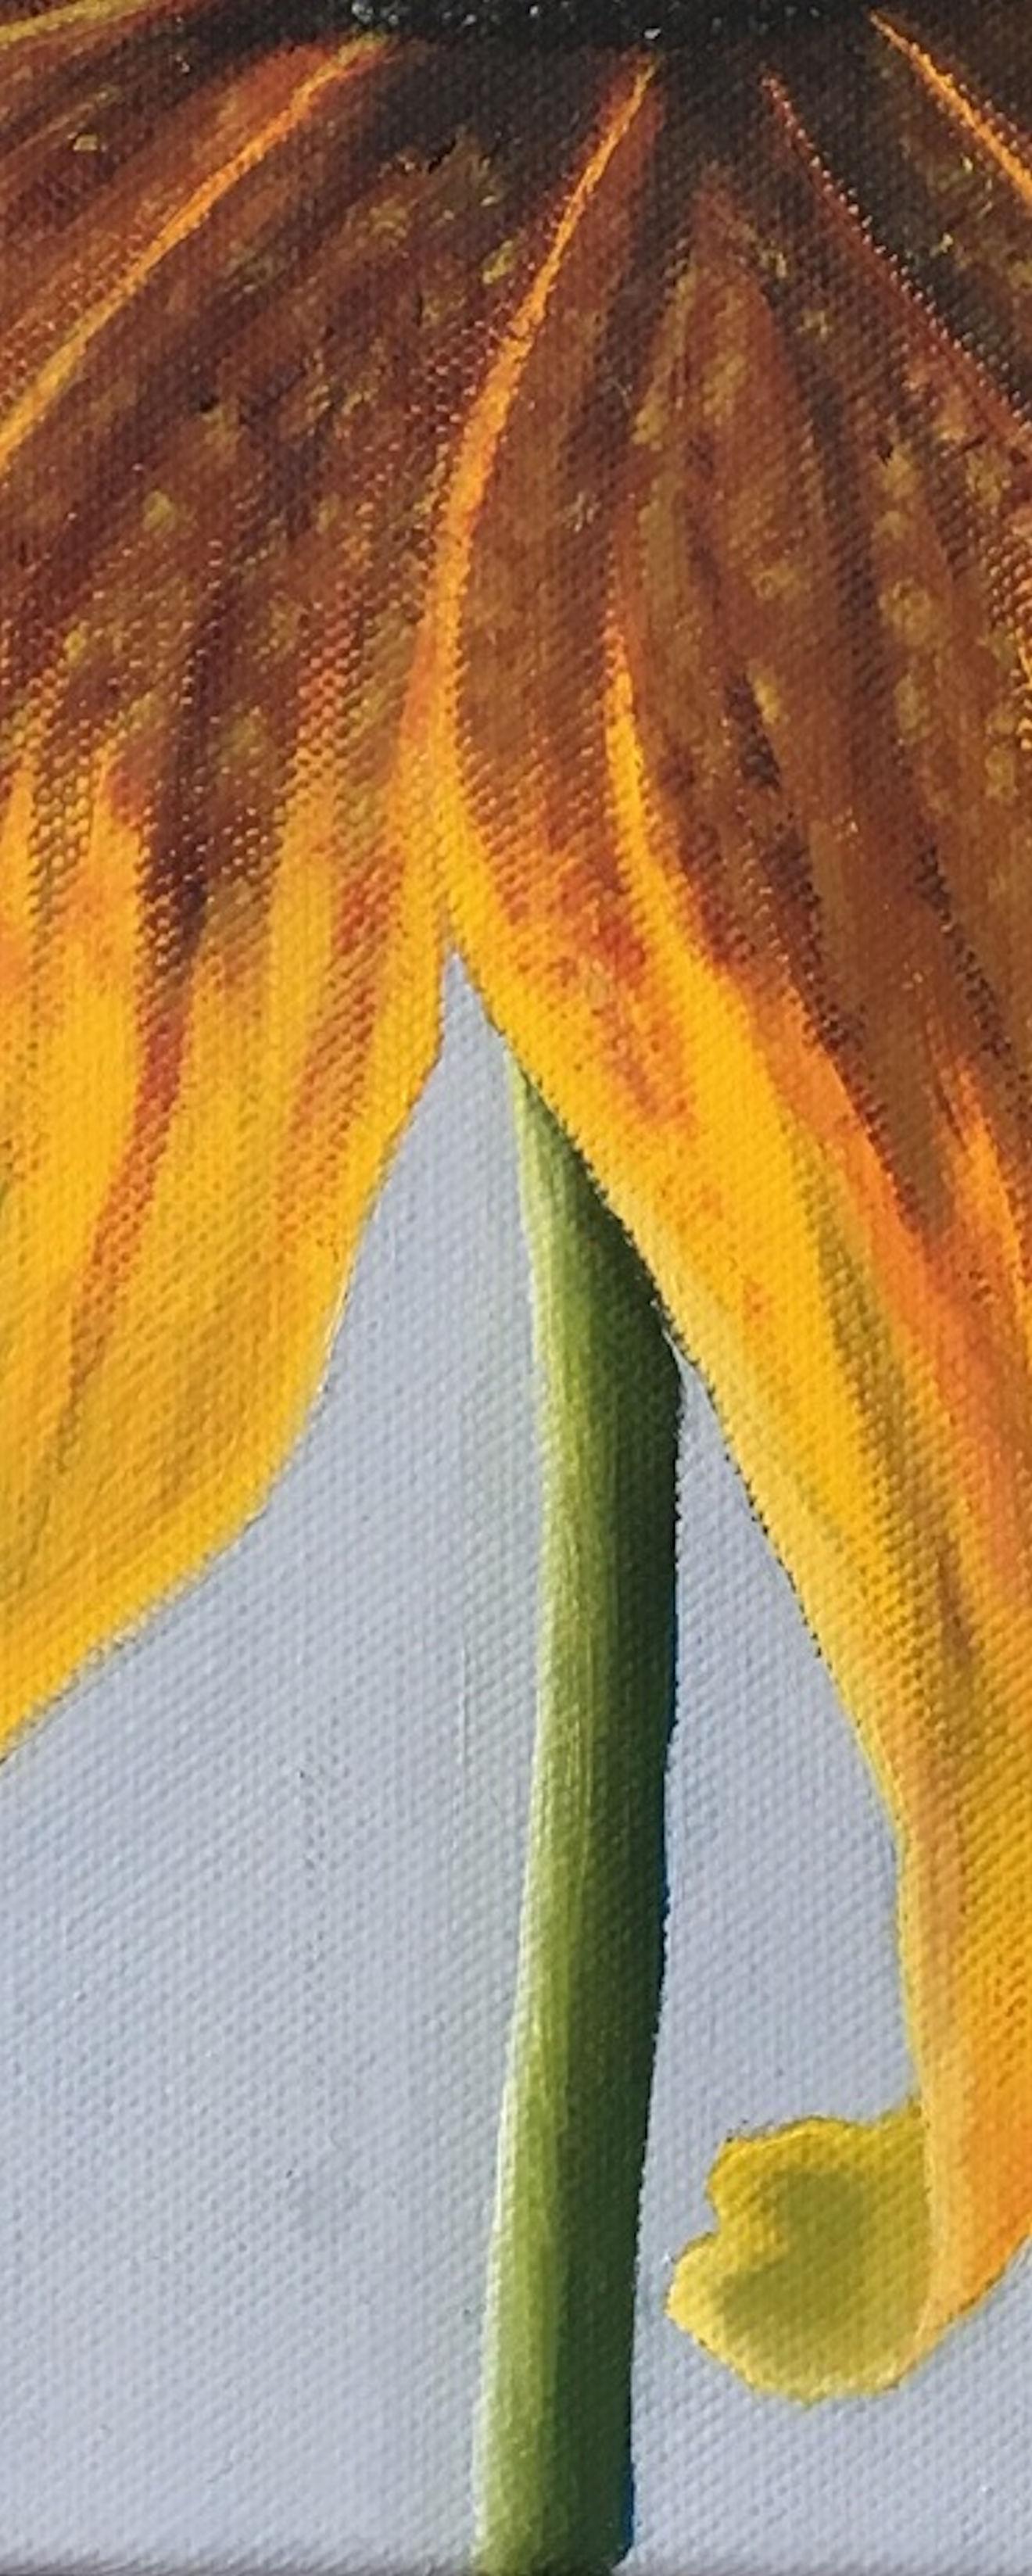 Peinture à l'huile sur toile représentant en gros plan une fleur de coneleaf.
Il s'agit de l'une des quatre peintures de fleurs aux couleurs vives et presque stylisées.

A propos de l'artiste :

Esther Hansen a grandi à la campagne et vit